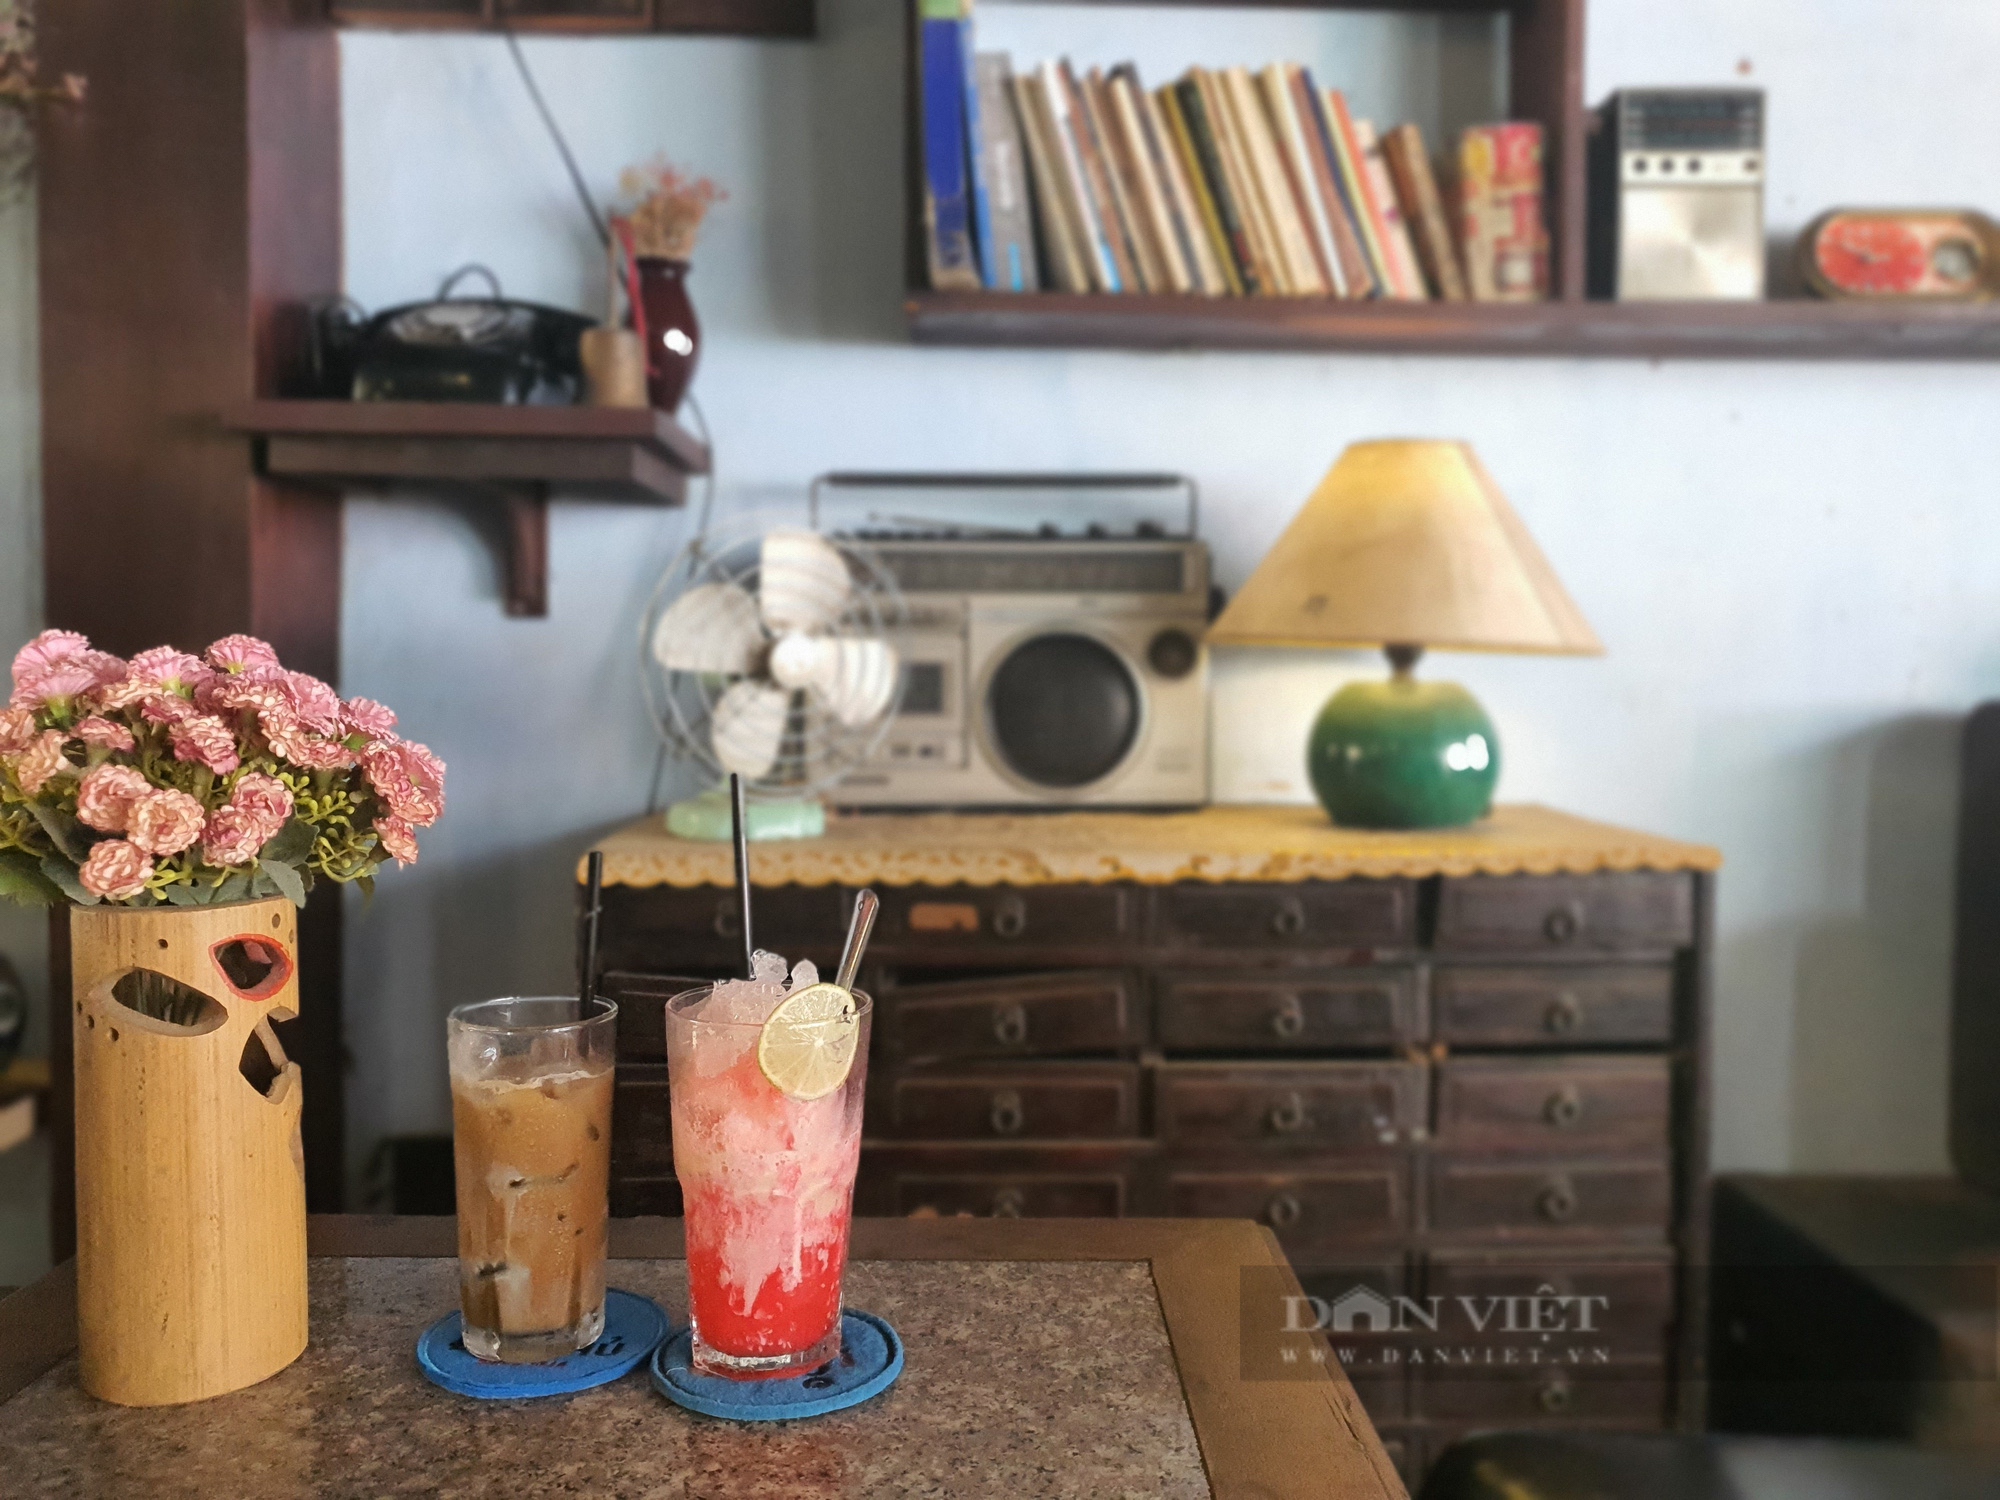 Saigon shop: The cafe has the secret cellar of the old Saigon Rangers - Photo 7.